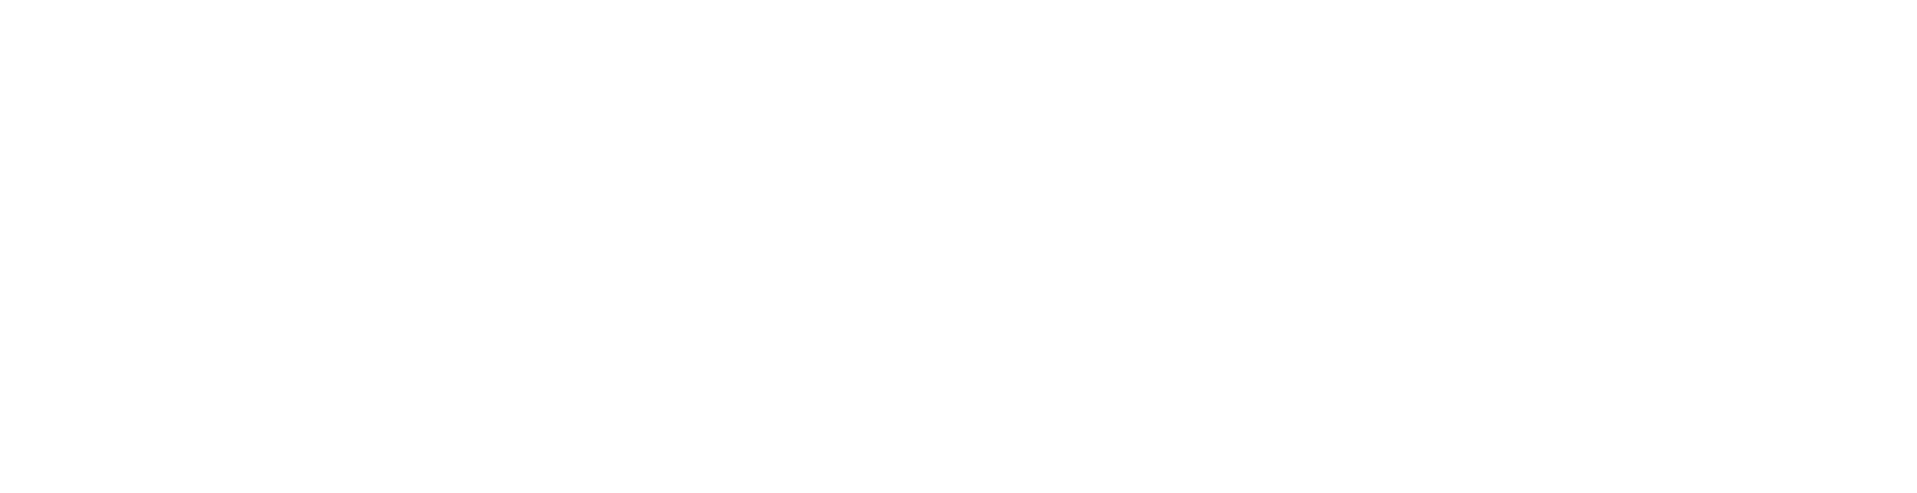 DCAS 2022 Logo